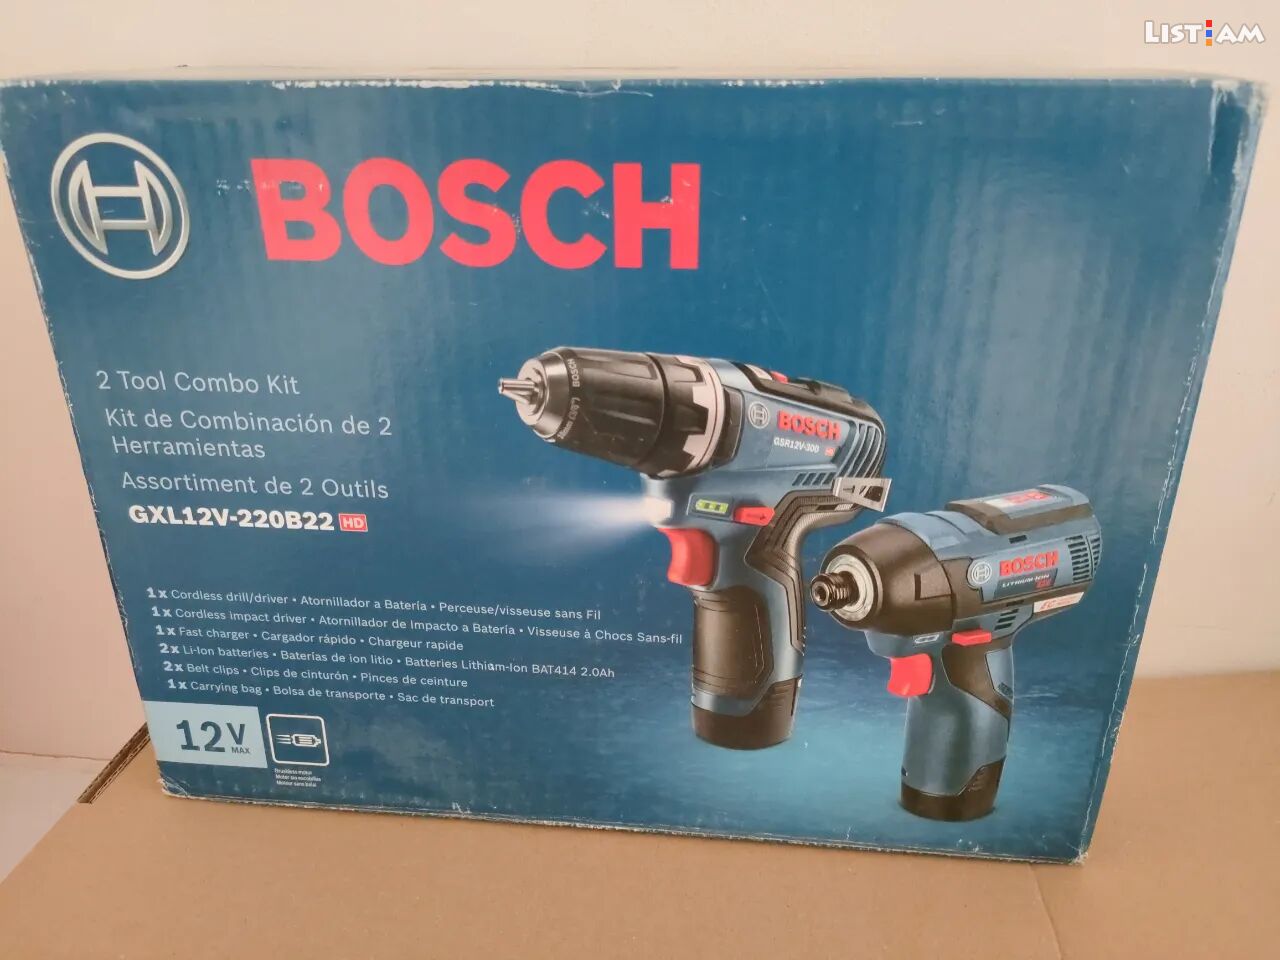 Bosch gxl12v-220b22